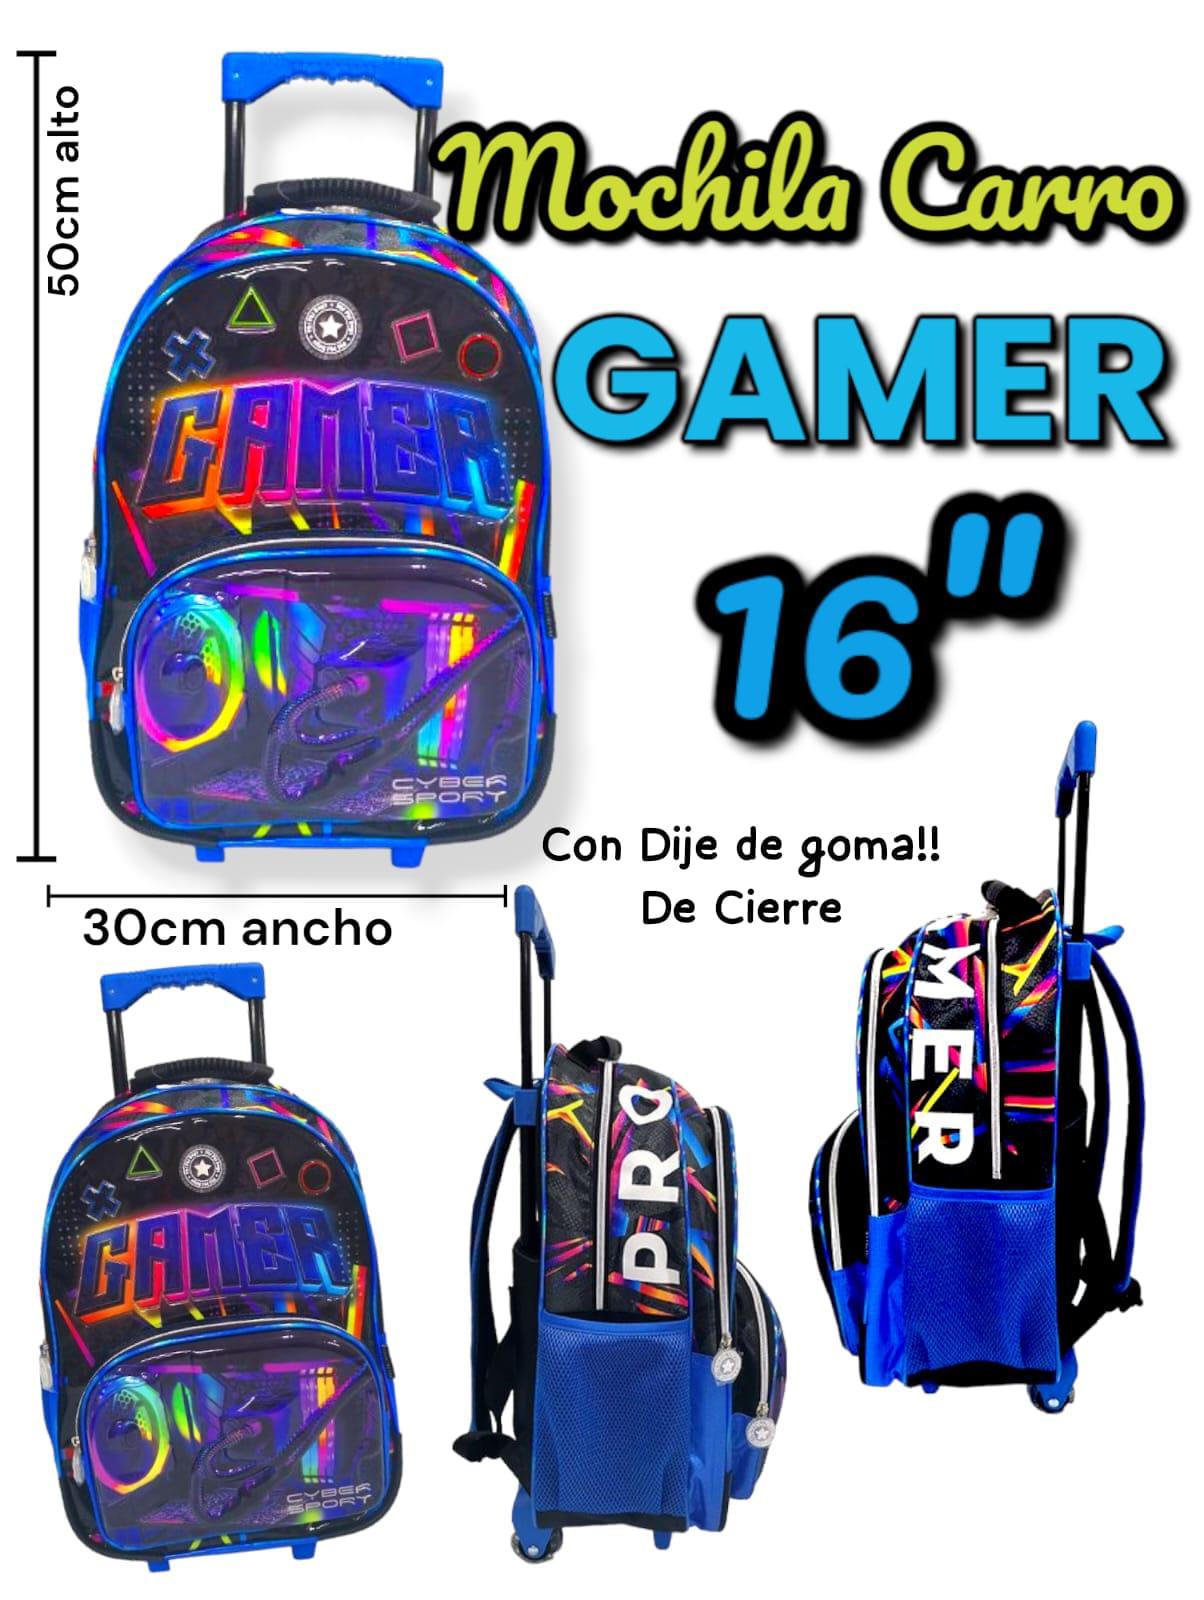 Mochila Carro GAMER 16